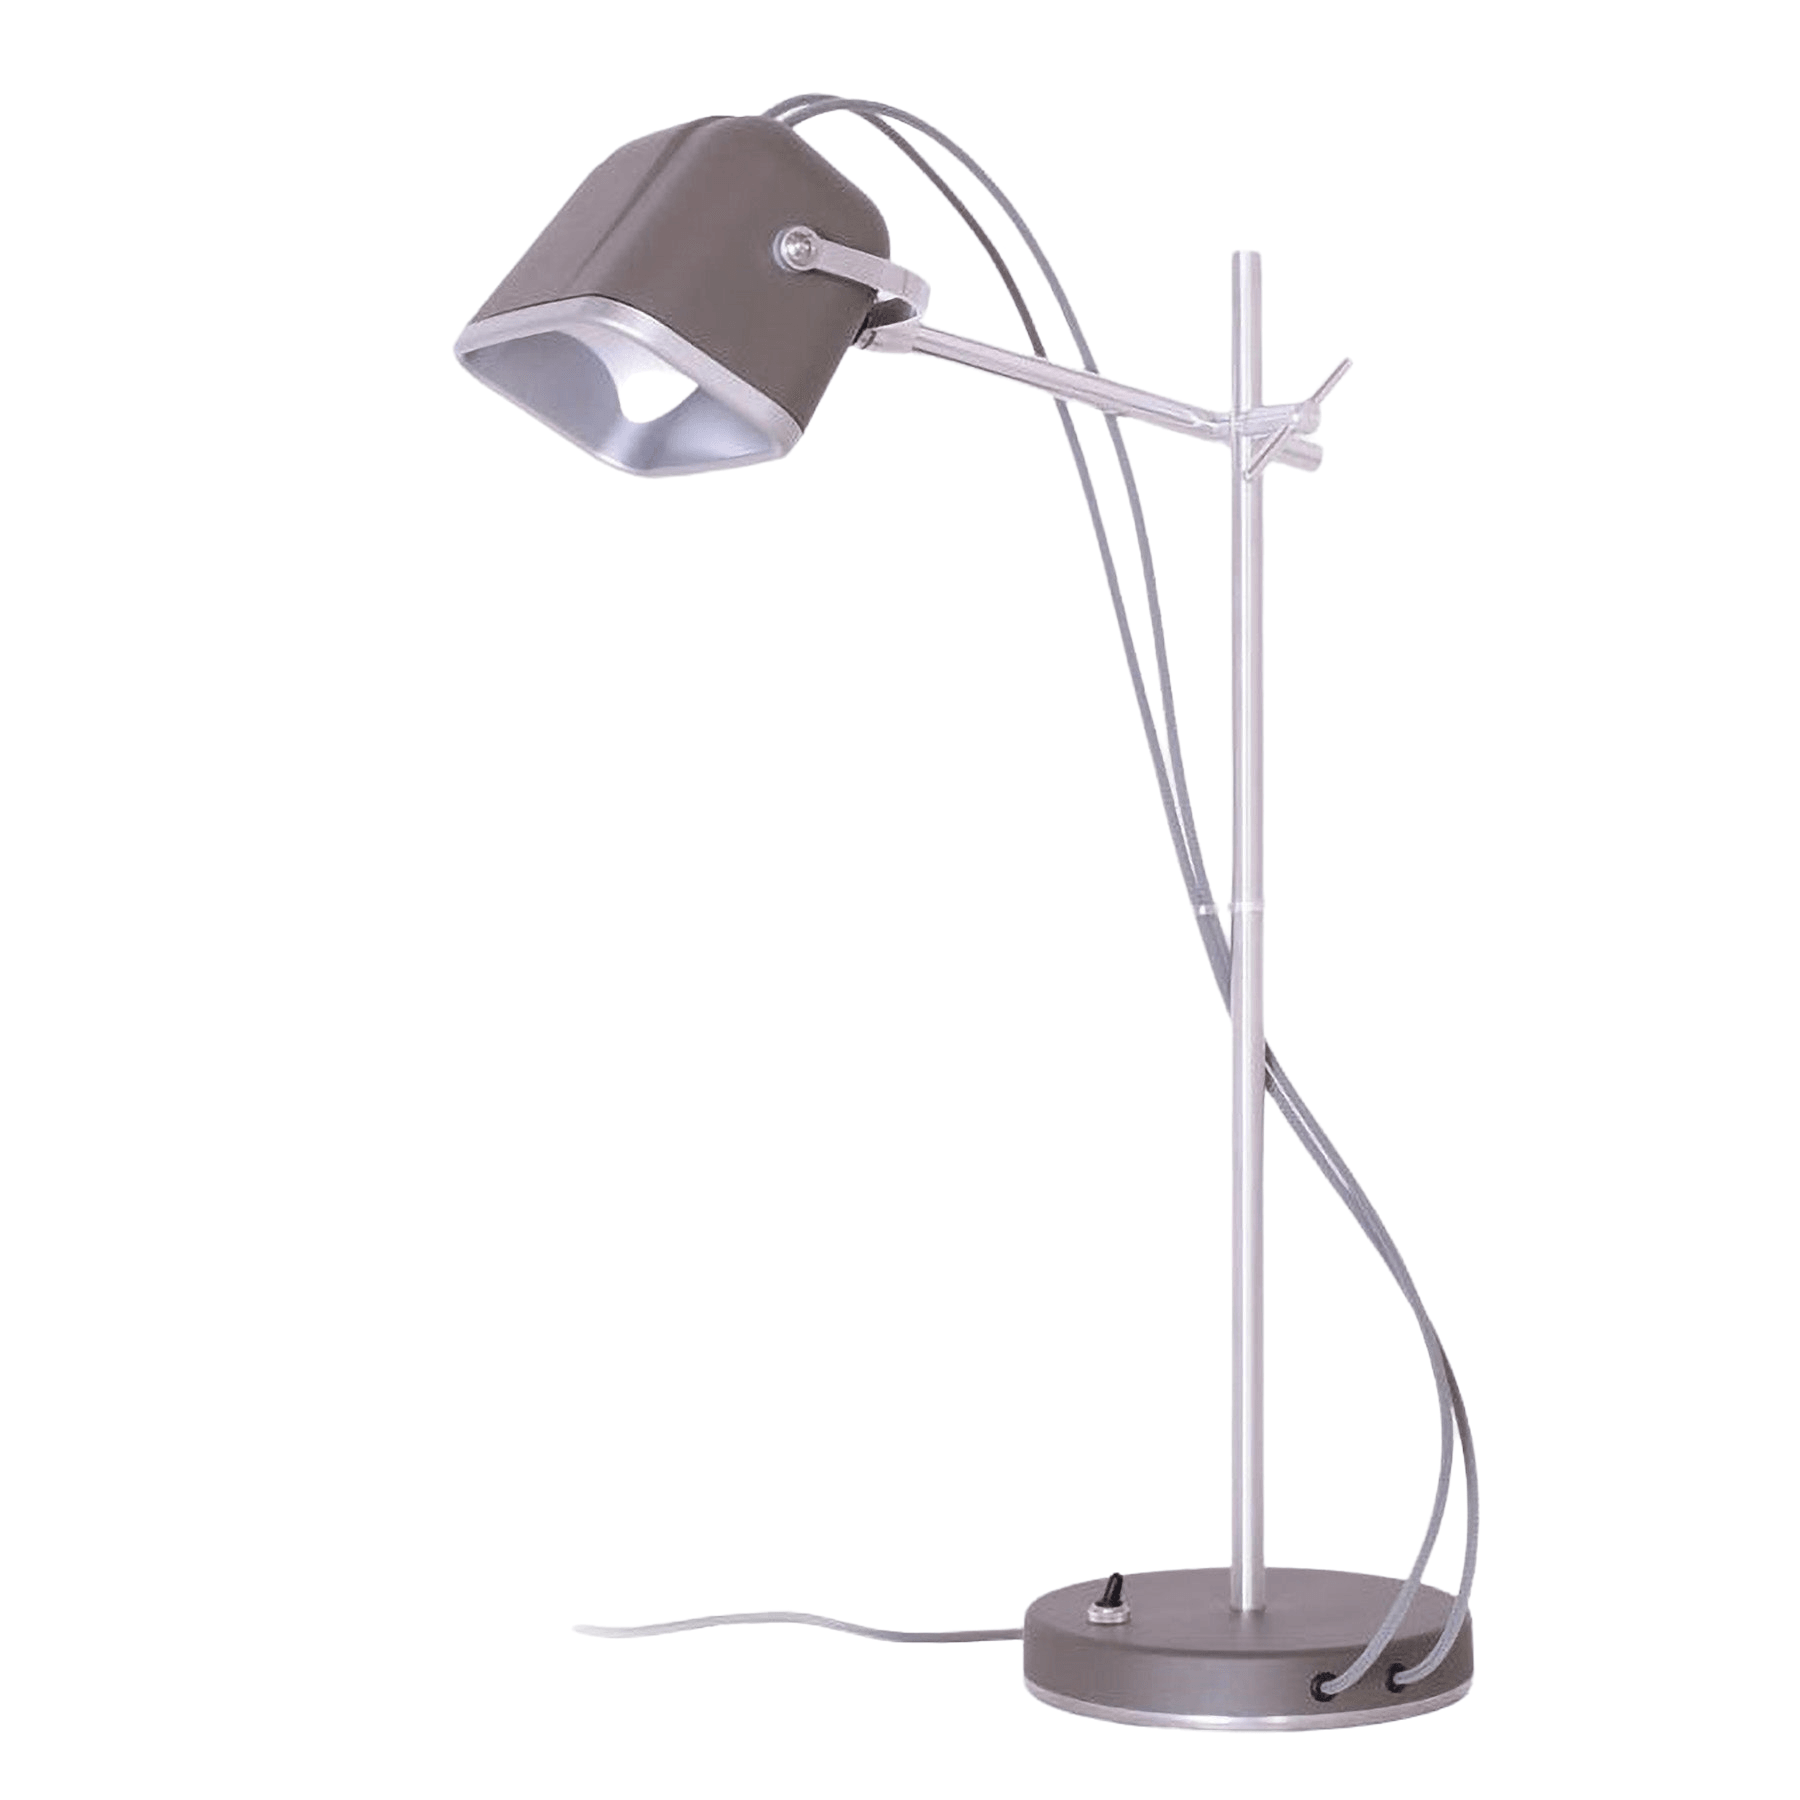 Lampe MOB - 37+ Design